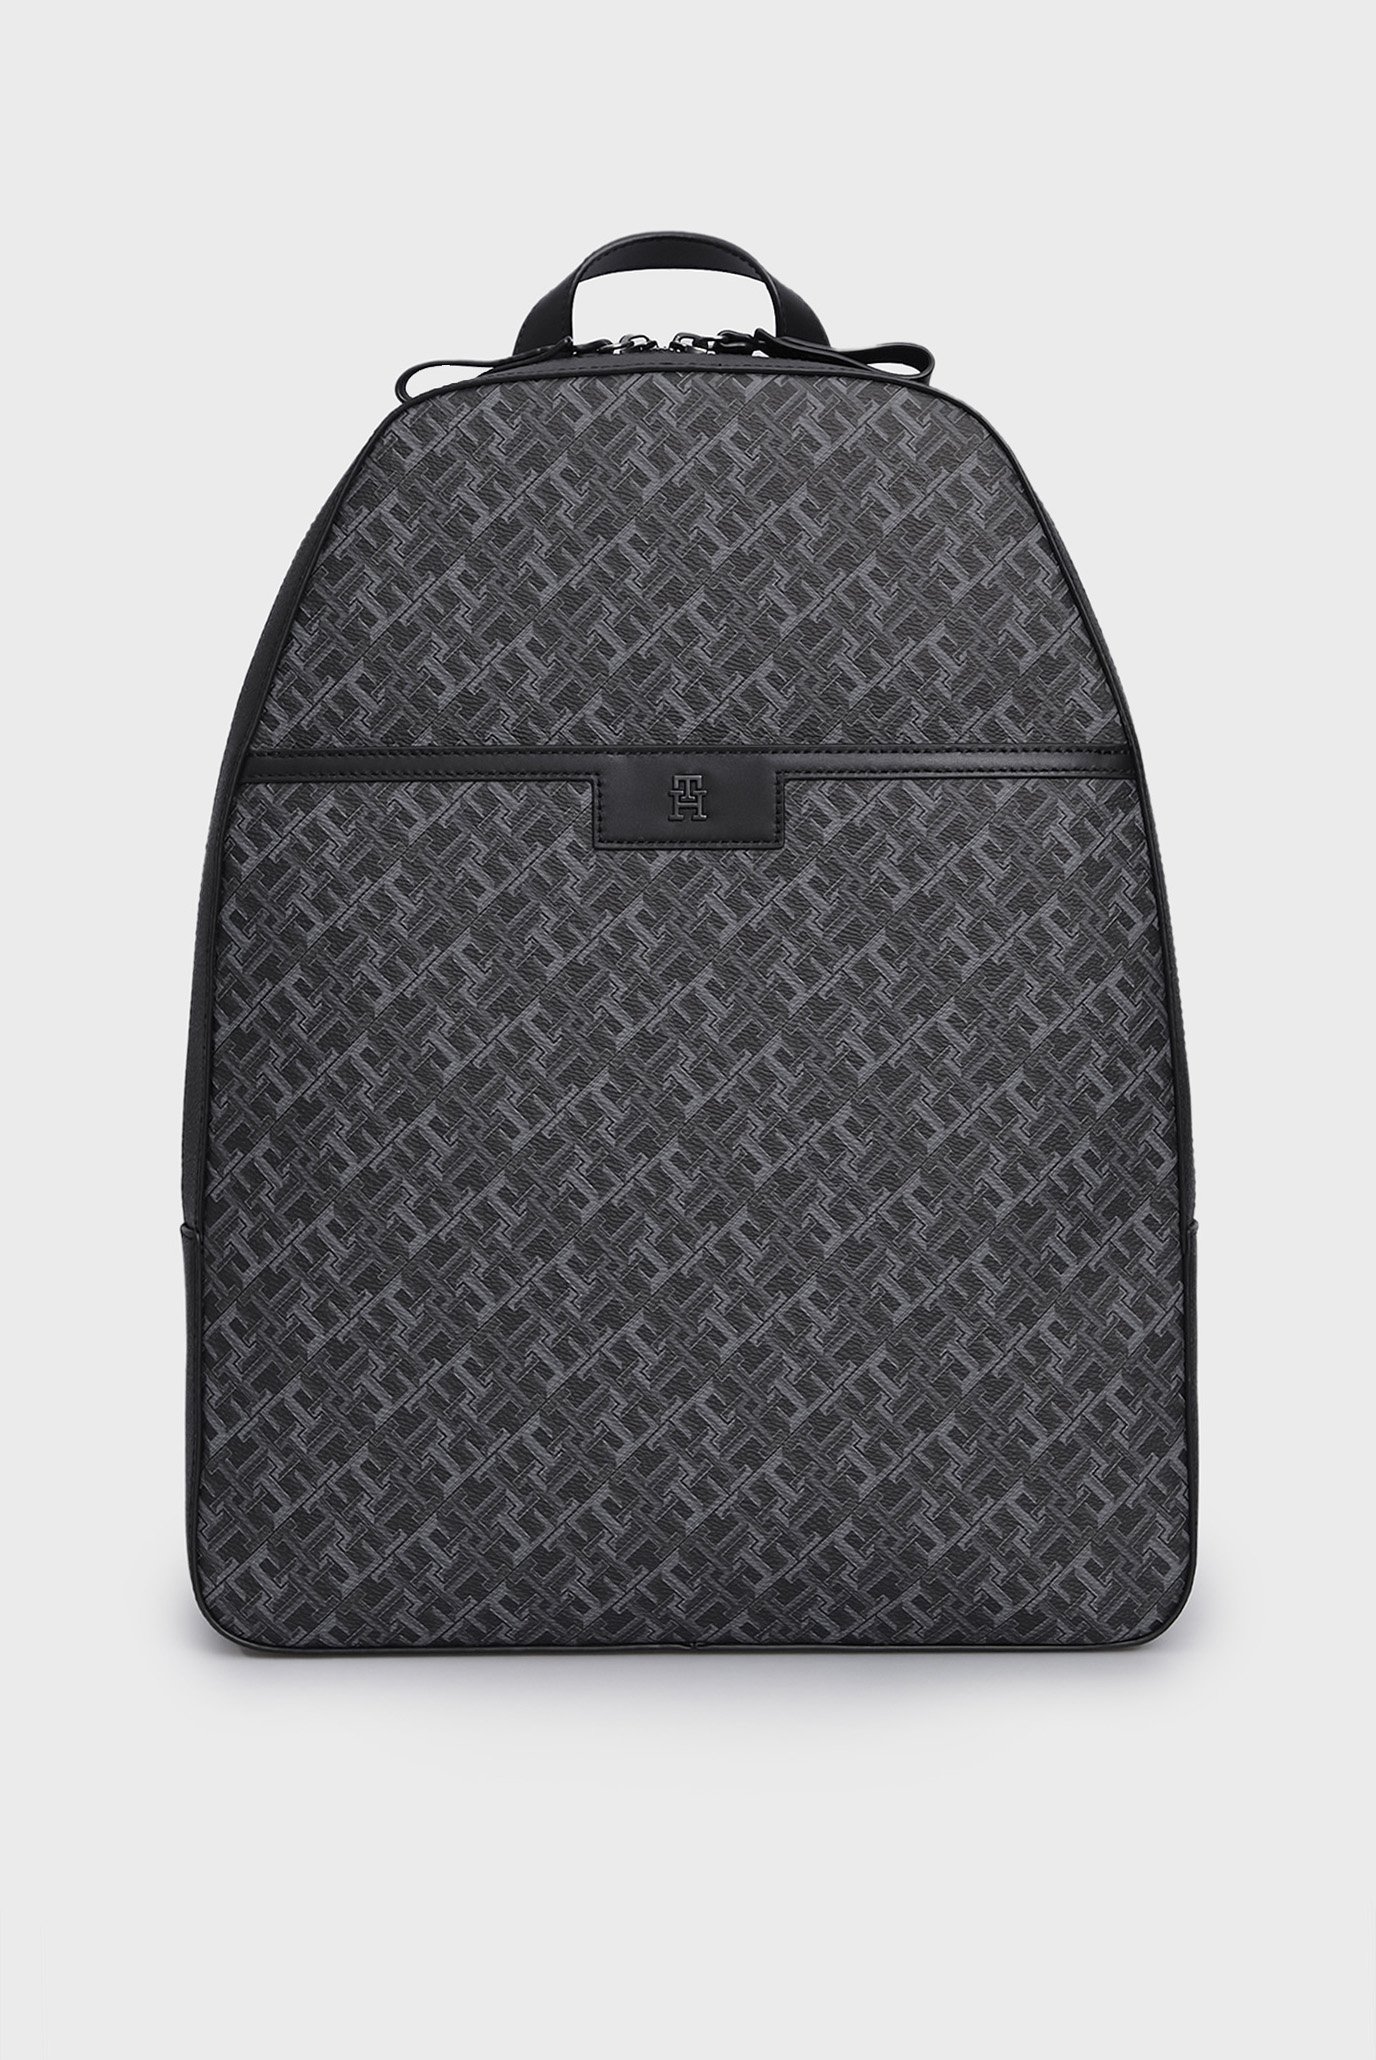 Чоловічий чорний рюкзак з візерунком TH MONOGRAM DOME 1